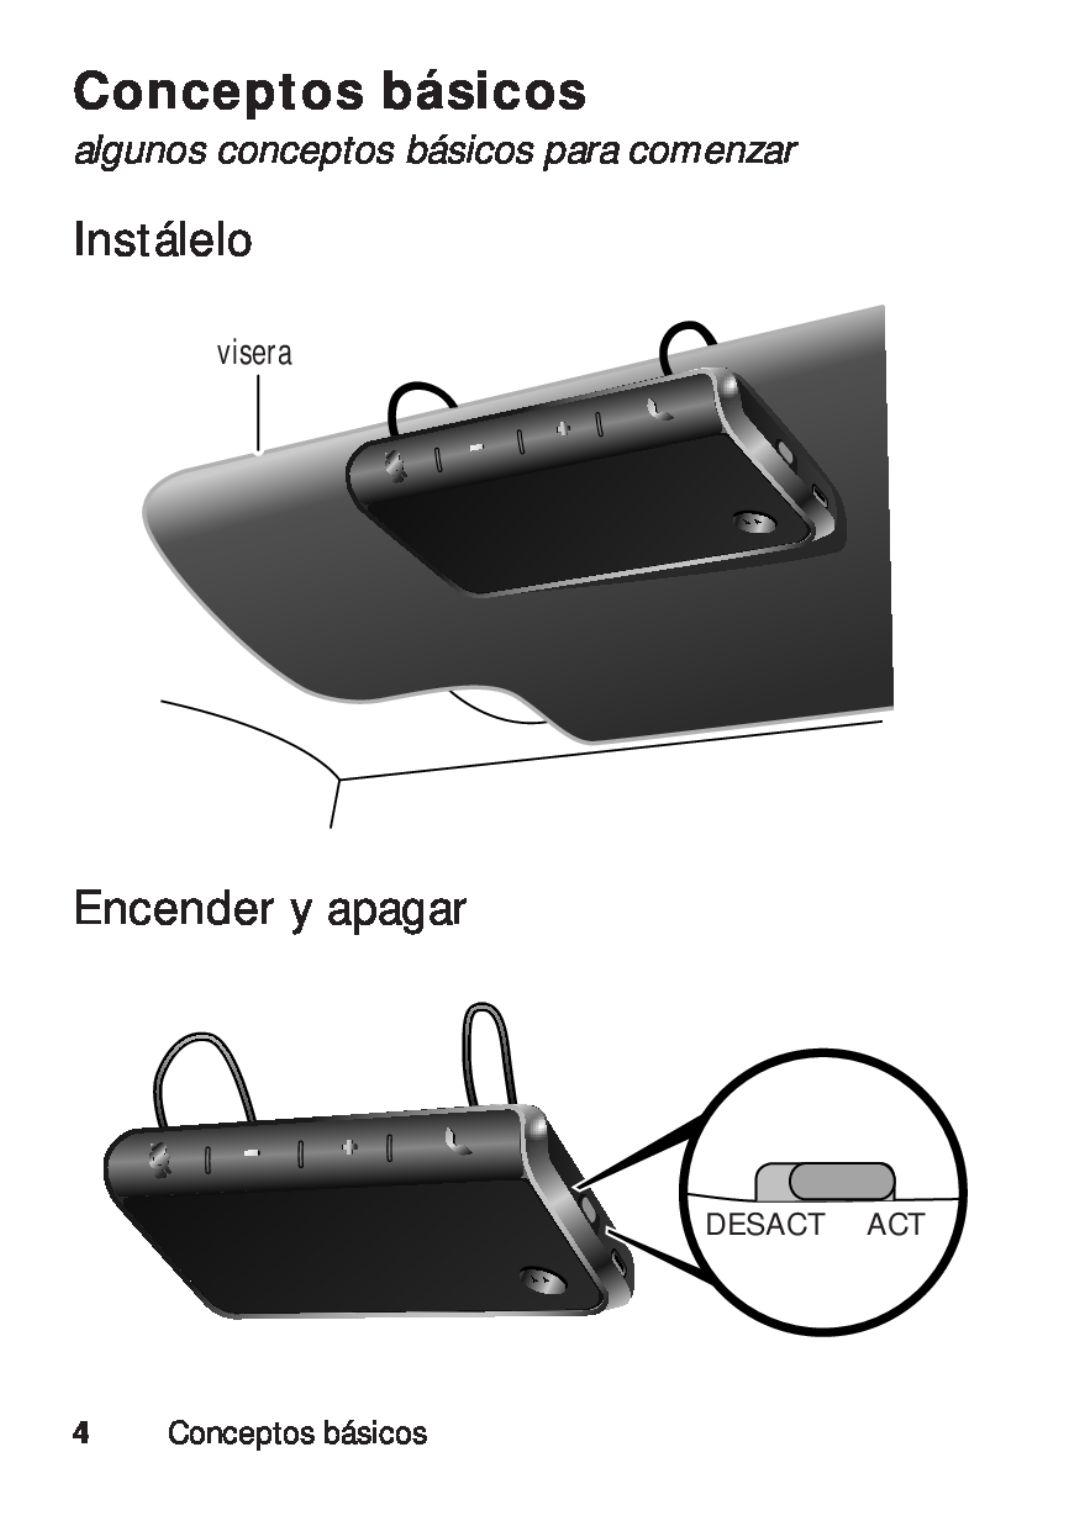 Motorola TX500 manual Conceptos básicos, Instálelo, Encender y apagar, algunos conceptos básicos para comenzar 